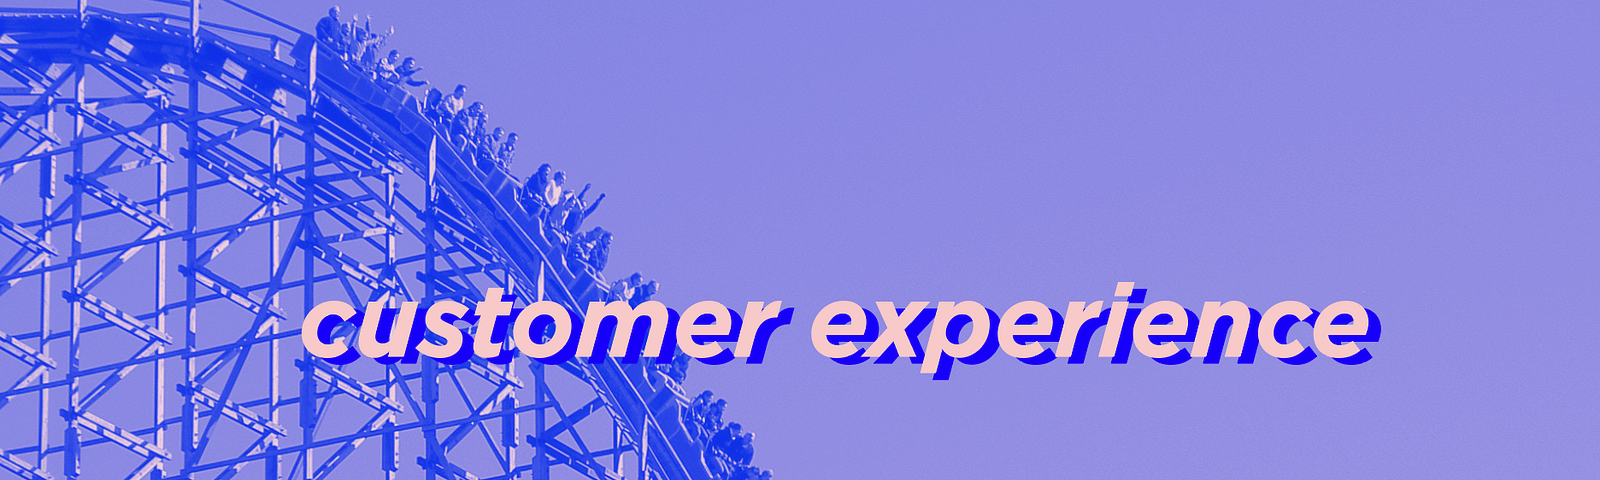 No fundo da imagem mostram pessoas dentro de um carrinho em uma montanha-russa, escrito “customer experience”